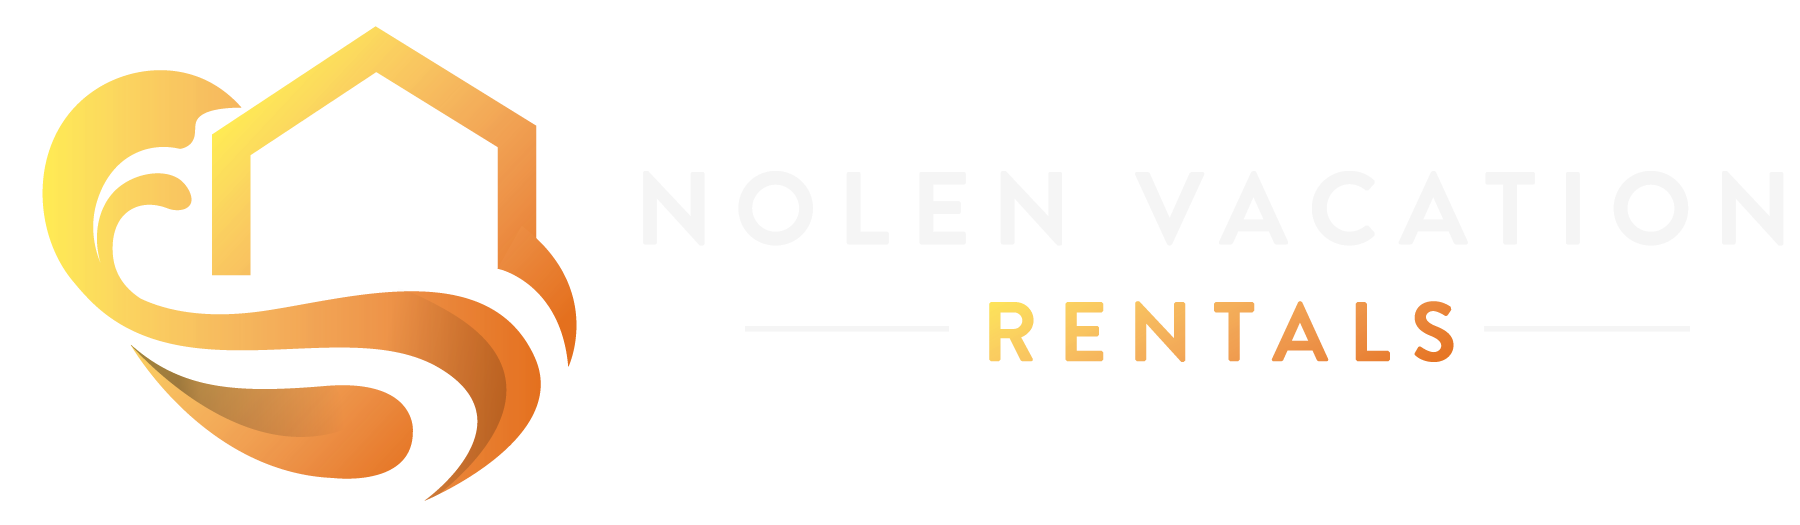 Icon Left No Background - Nolen Vacation Rentals 1800 x 525